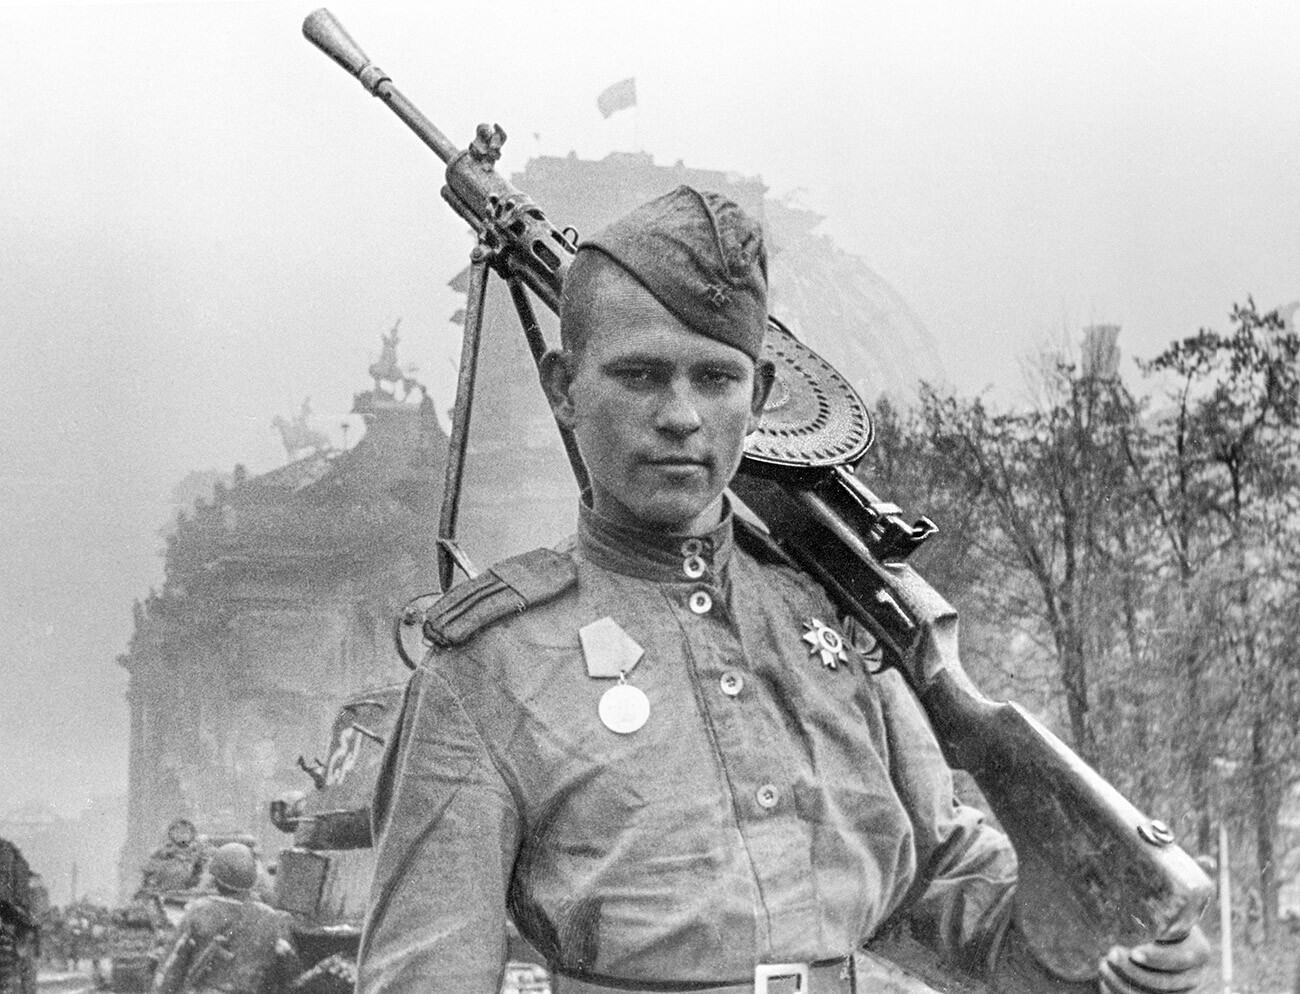 Machine gunner Viktor Levin at the captured Reichstag.